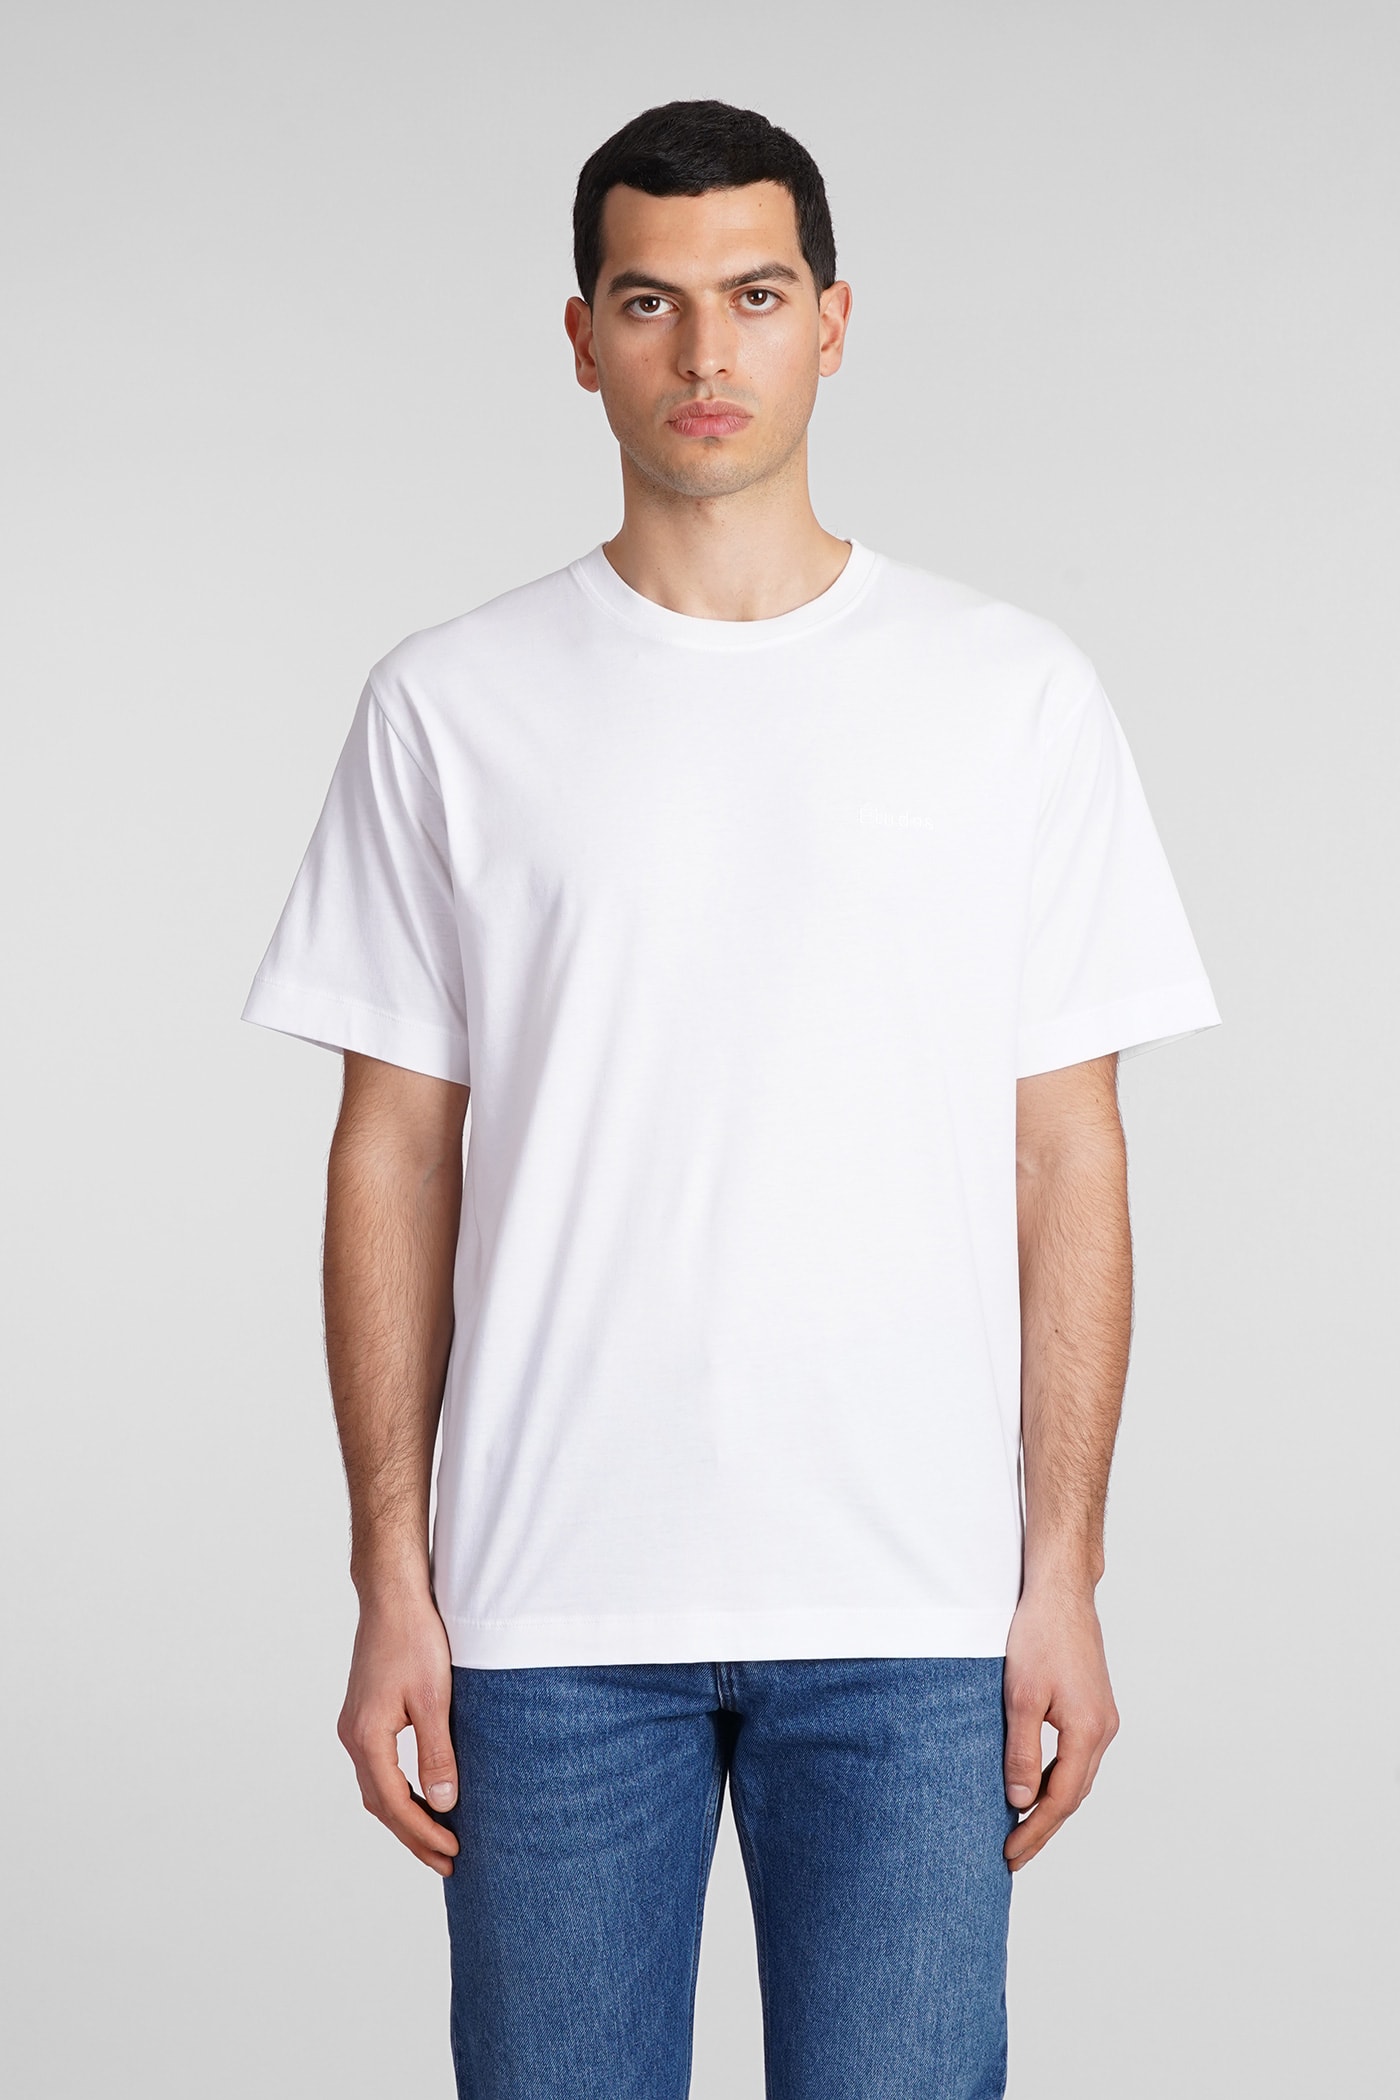 Etudes Studio T-shirt In White Cotton In Neutral